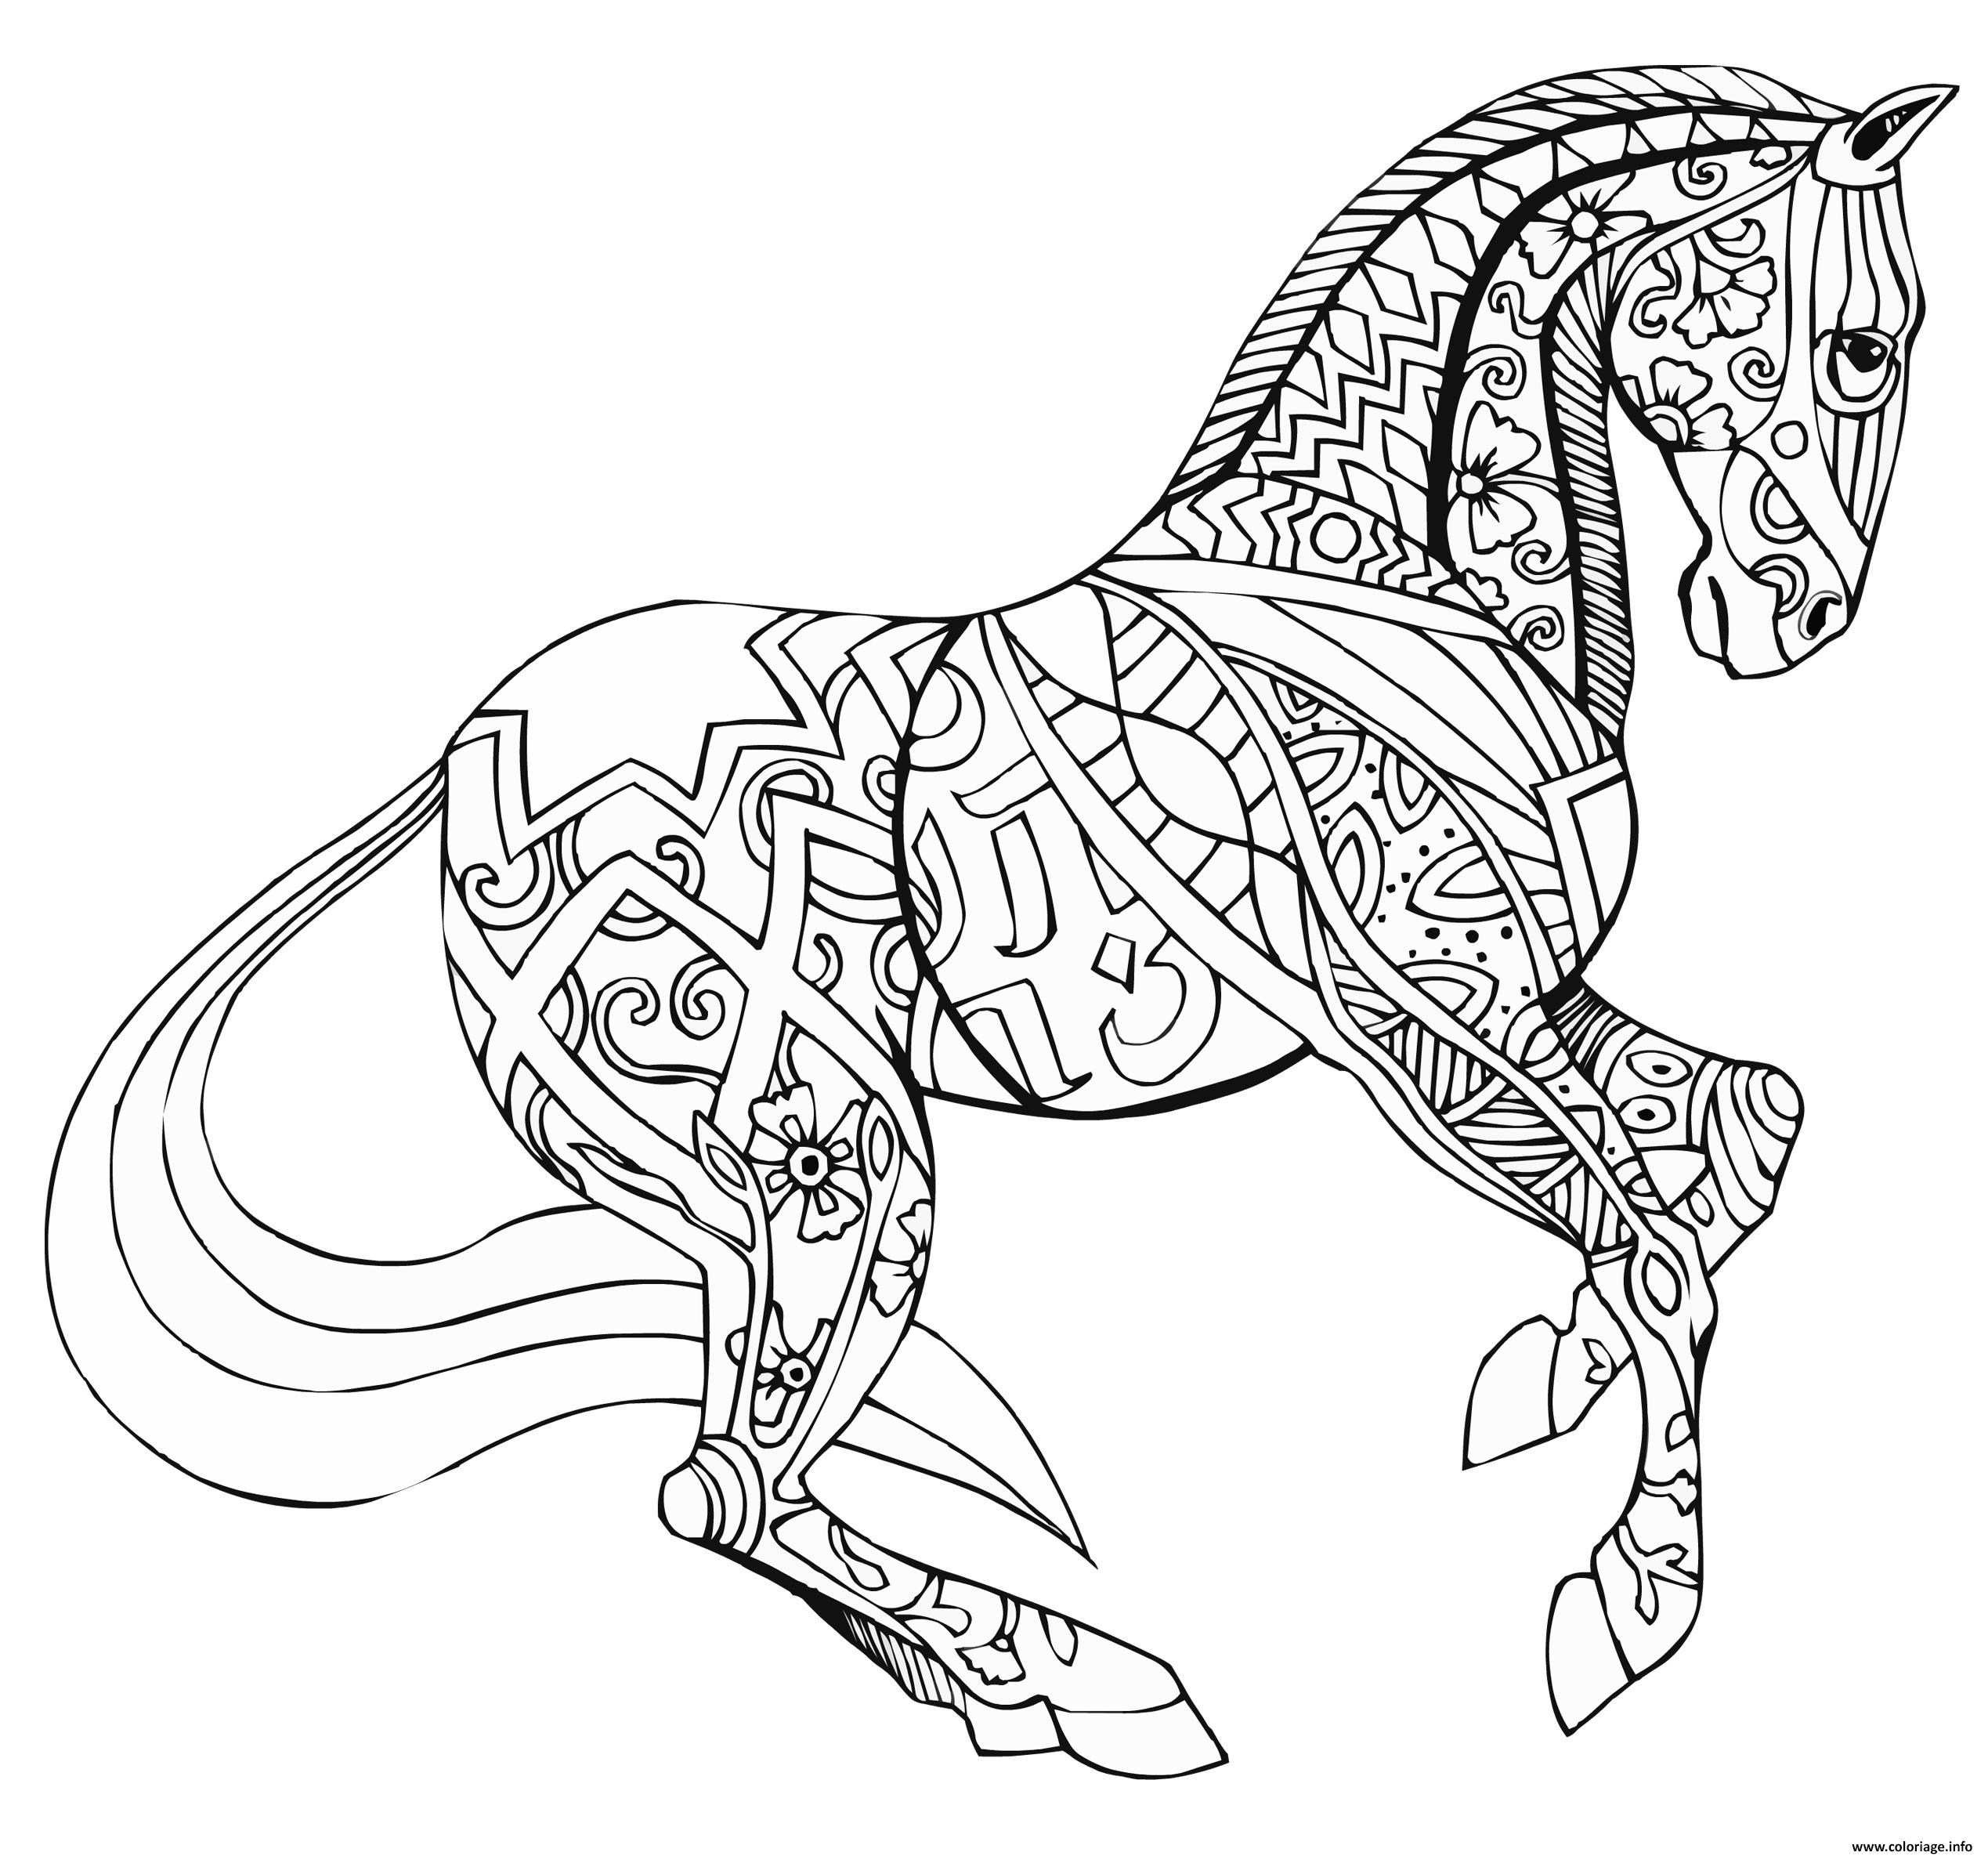 9179 beau dessin cheval colorier en ligne mademoiselleosaki 8588 coloriage adulte cheval